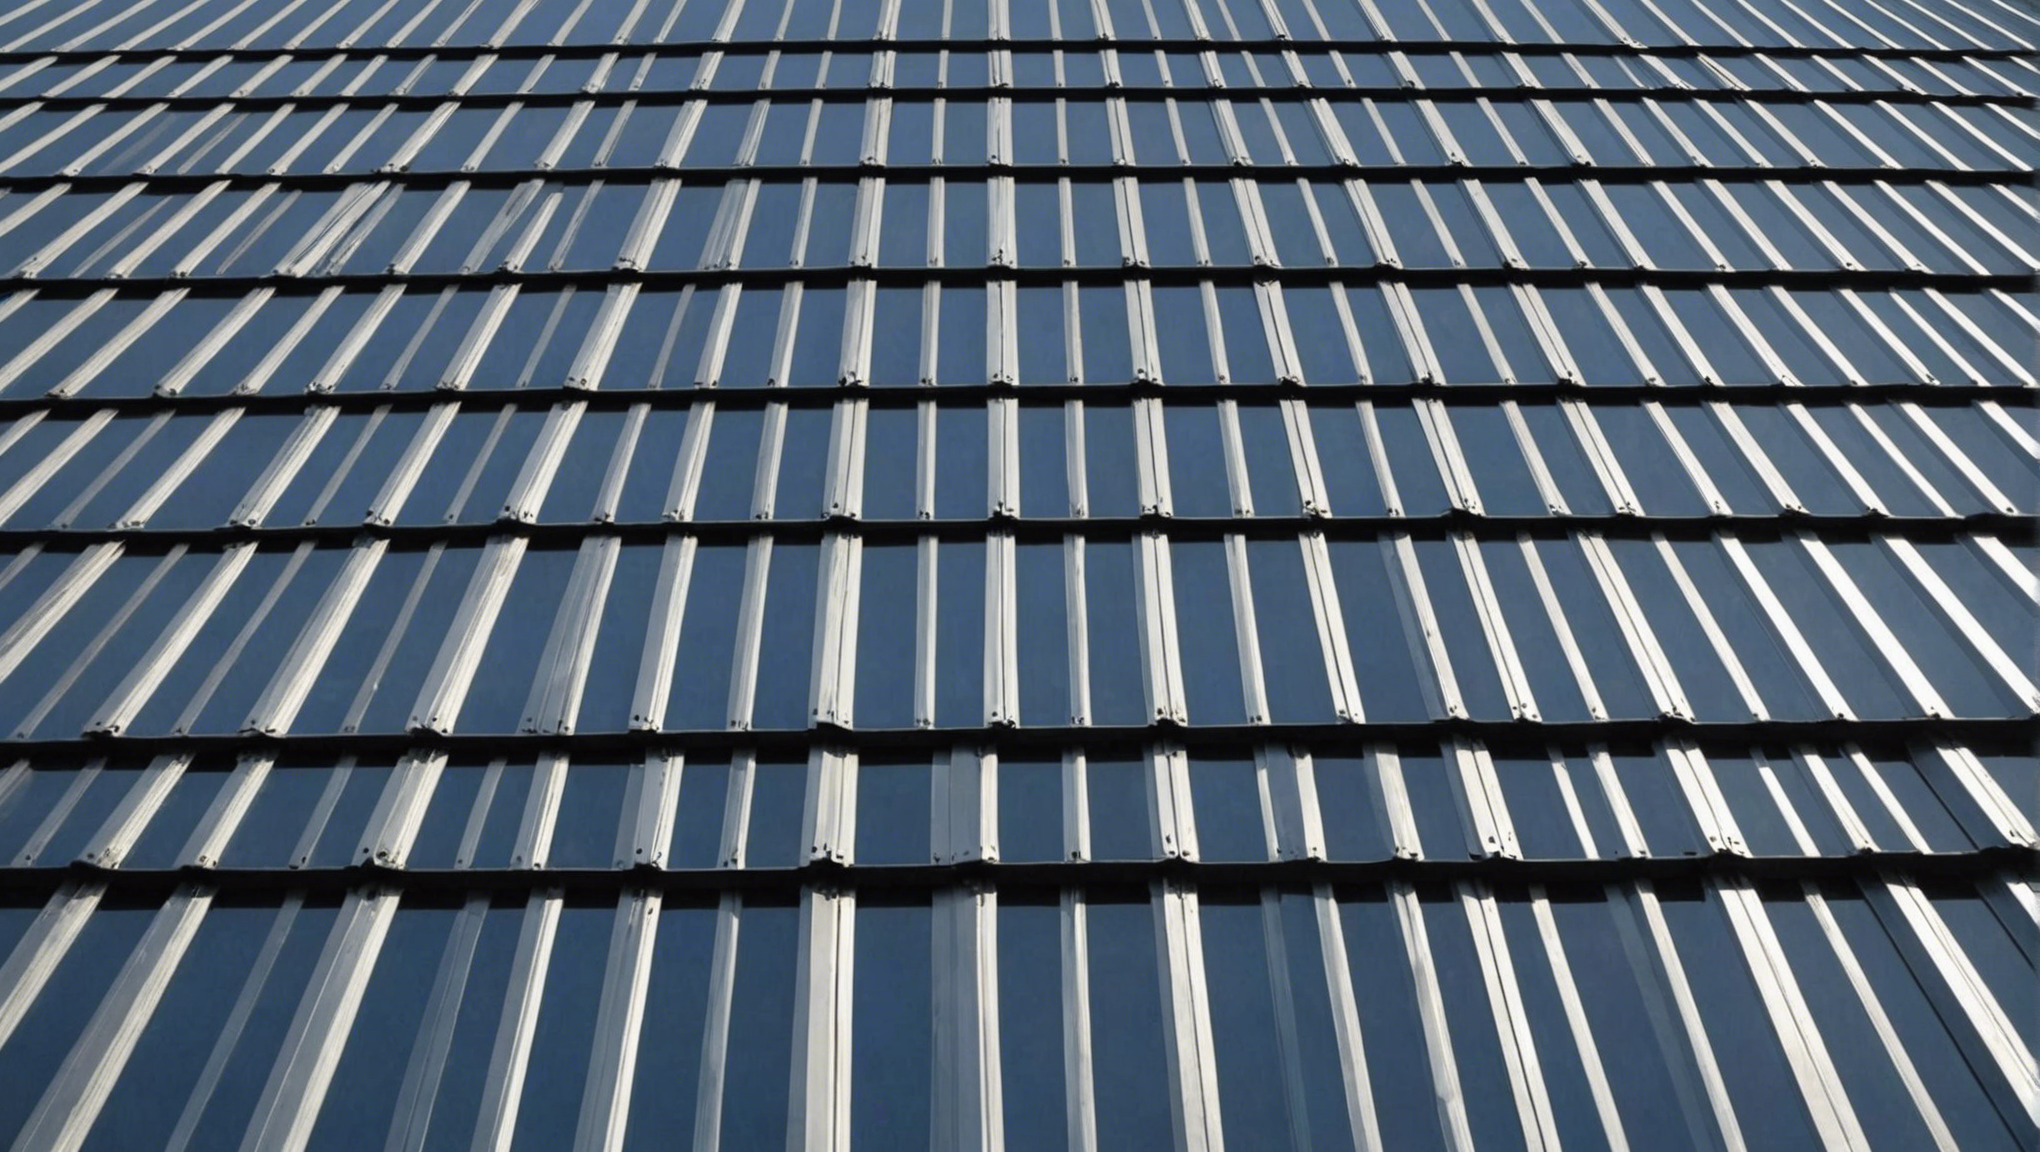 découvrez les avantages de la toiture en métal pour protéger votre bâtiment avec efficacité et élégance. fiable, durable et esthétique, la toiture en métal offre une solution moderne pour toutes les structures.